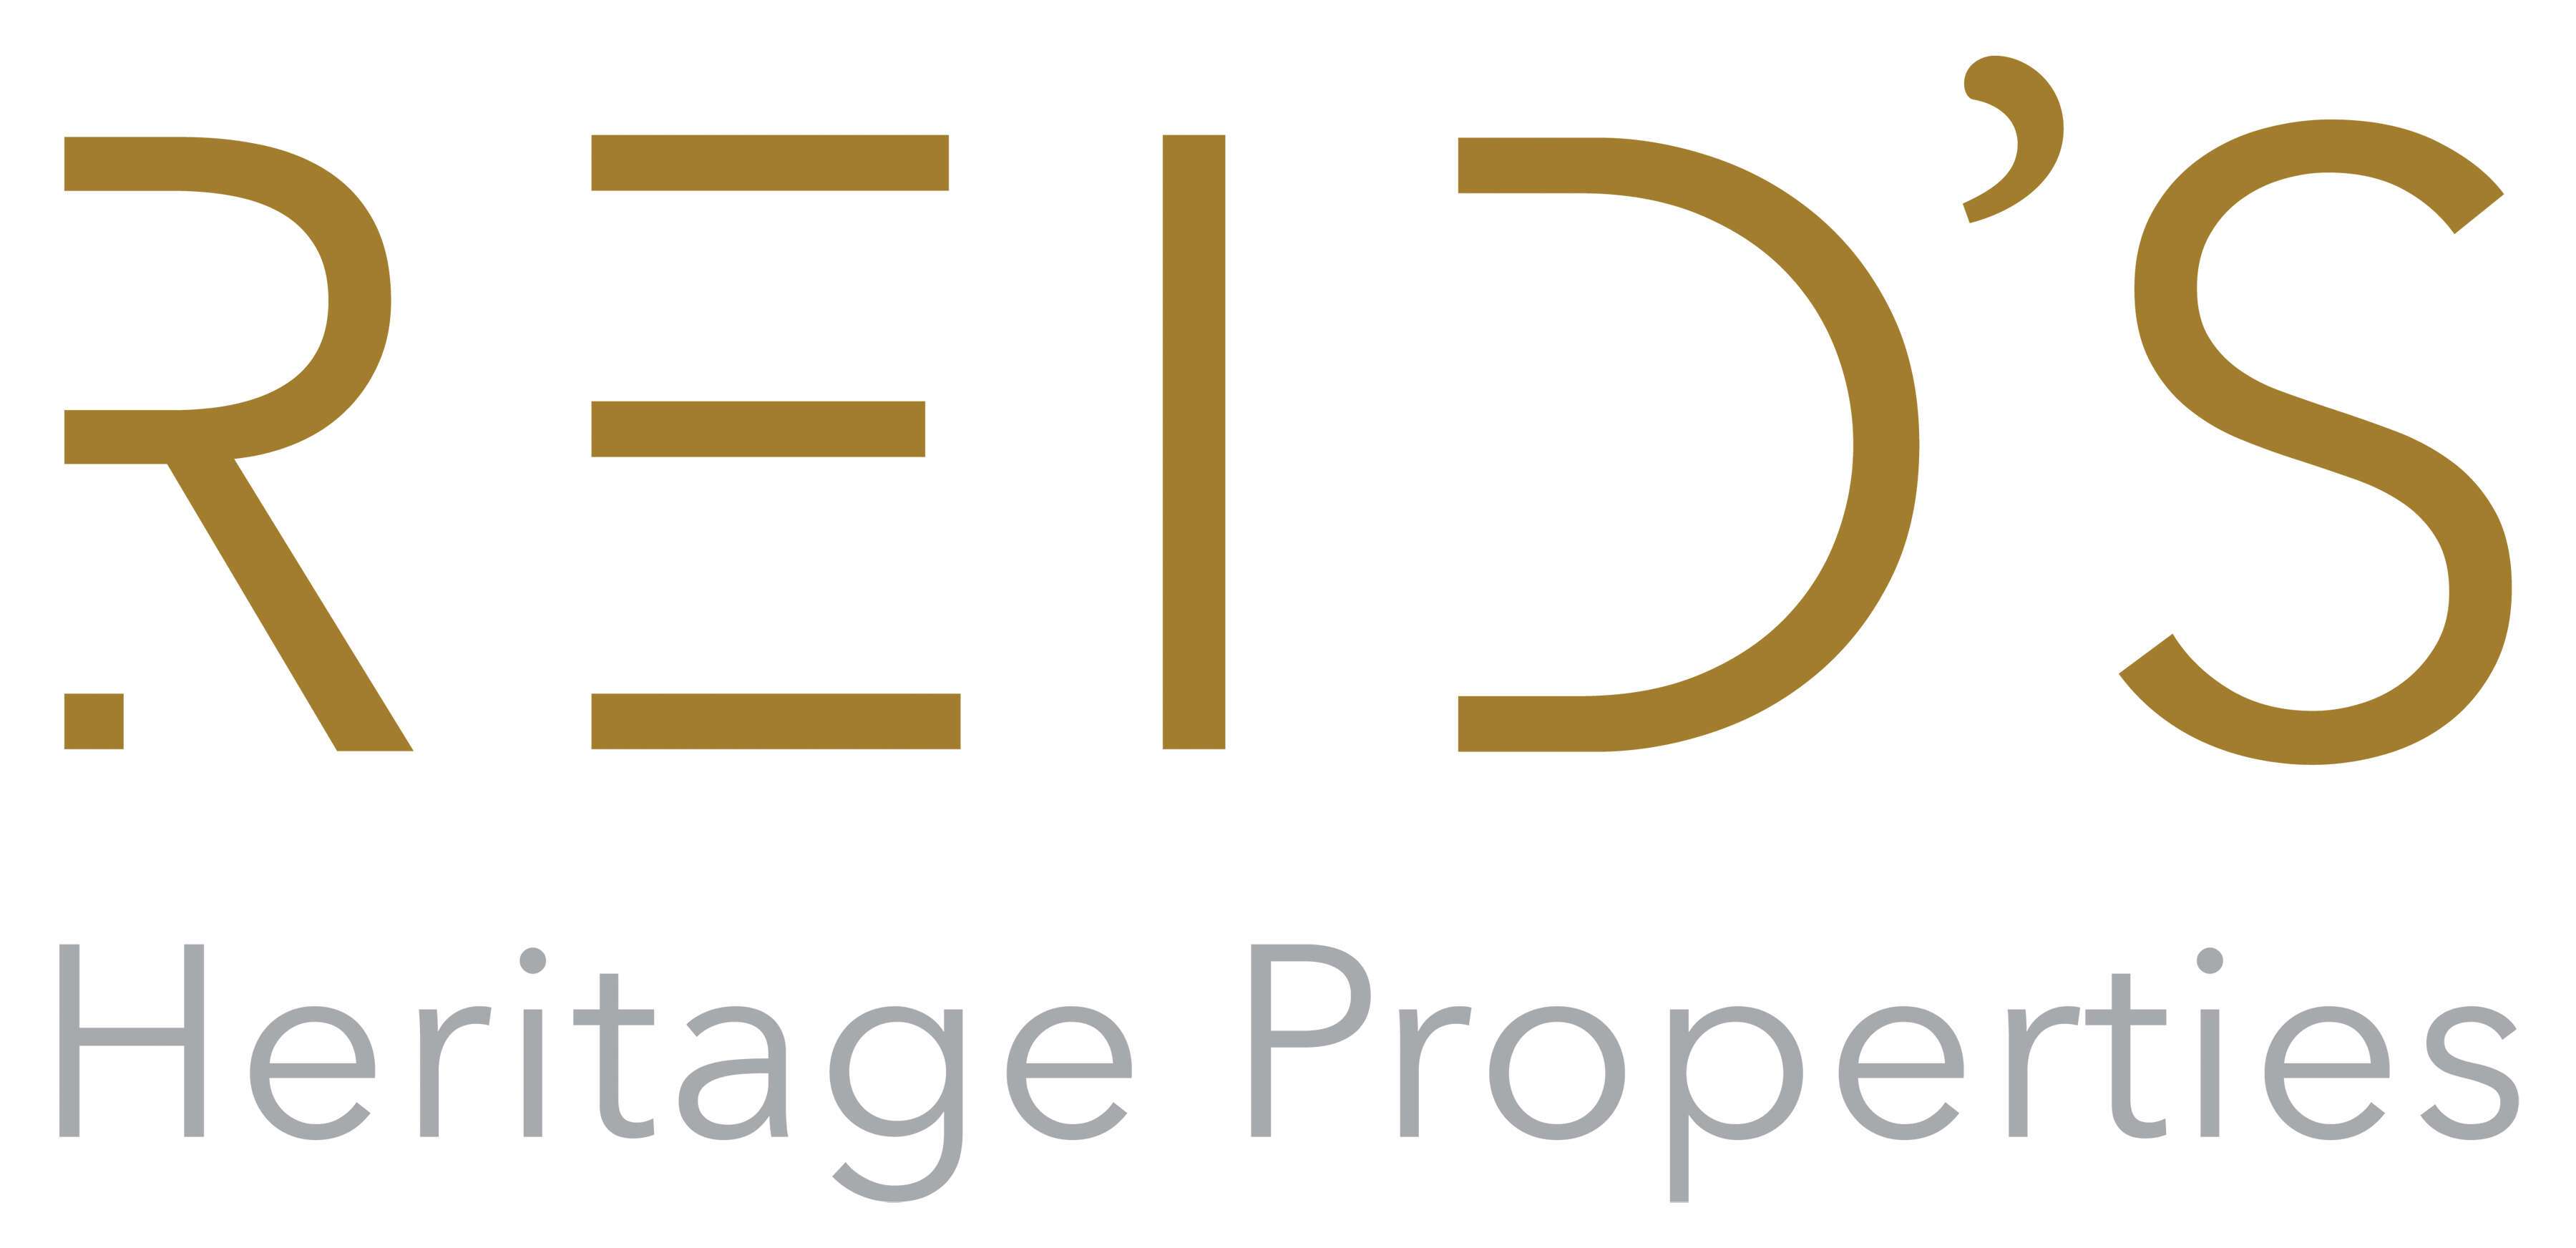 Reids Heritage Properties